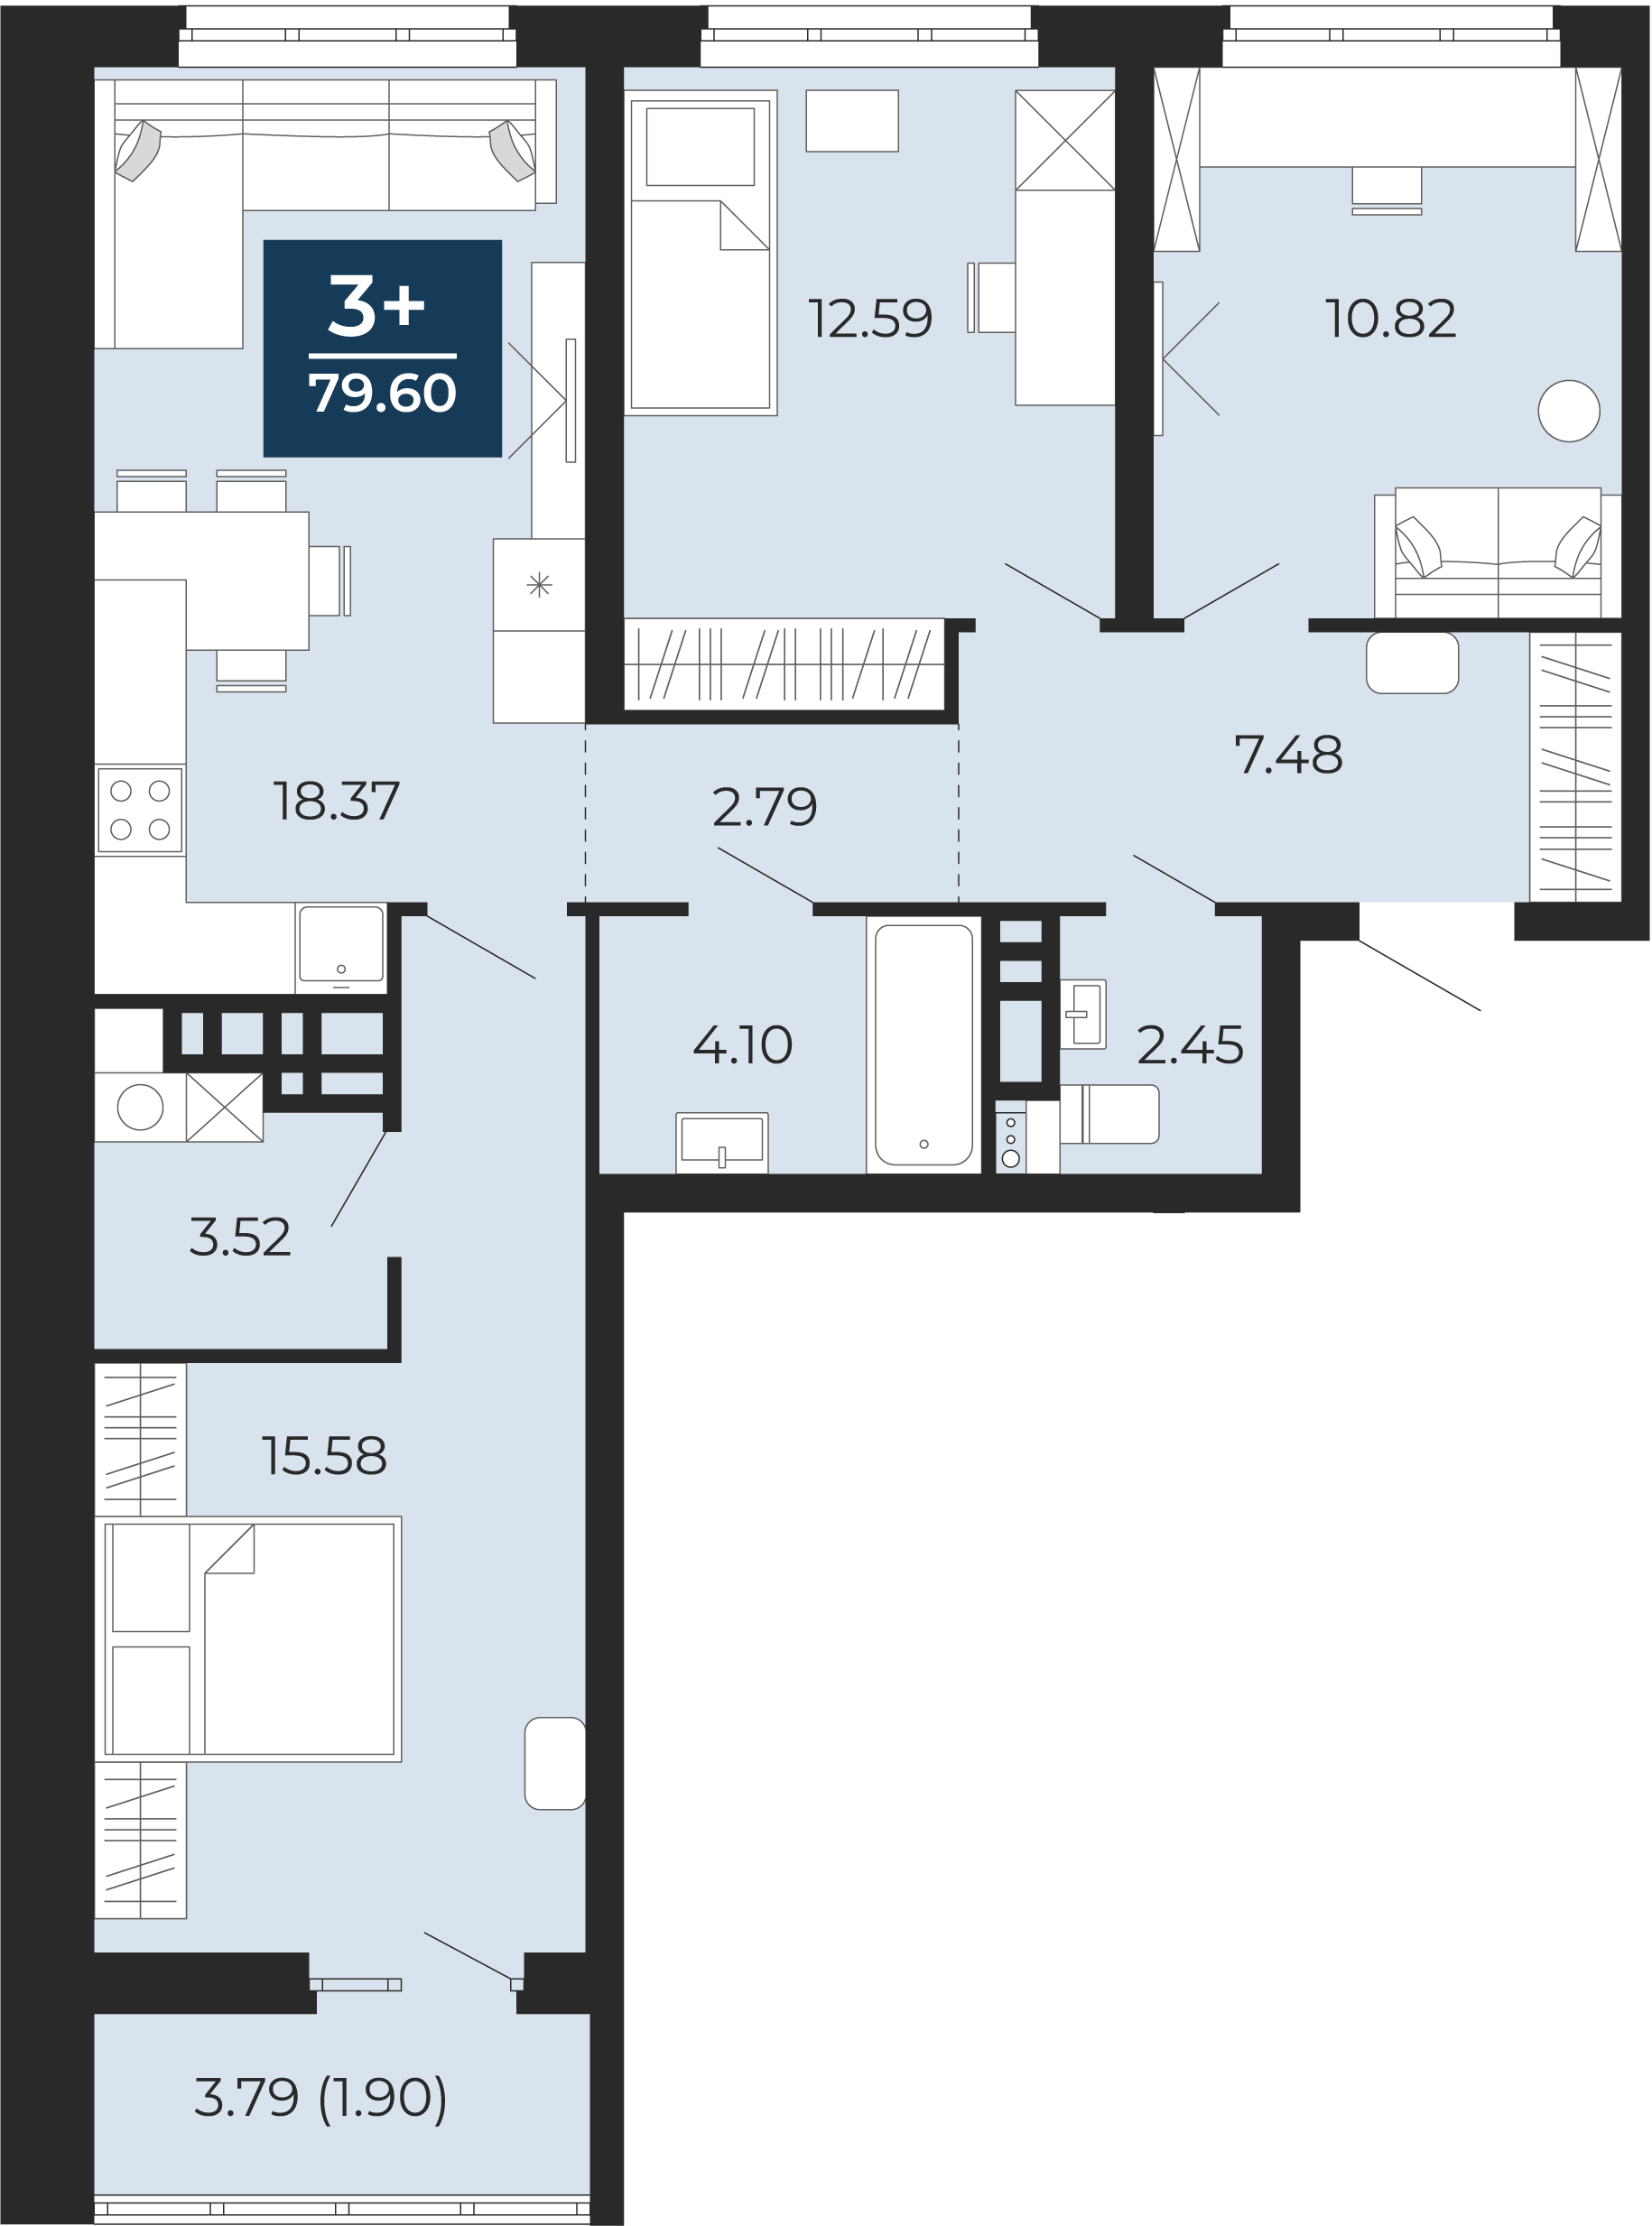 Квартира № 204, 3-комнатная, 79.6 кв. м, 12 этаж